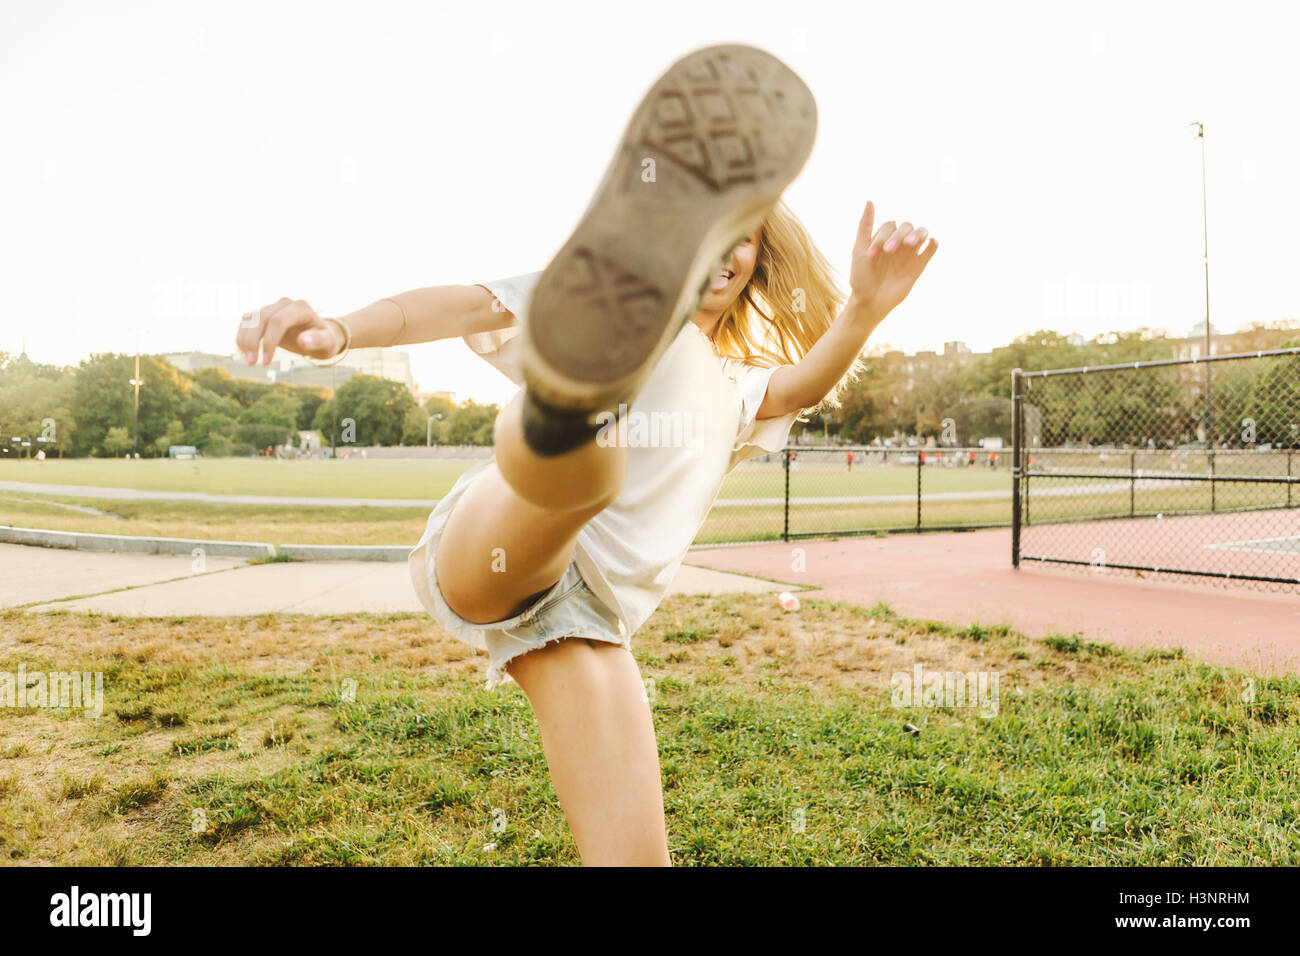 Woman kicking up leg on sports field Stock Photo